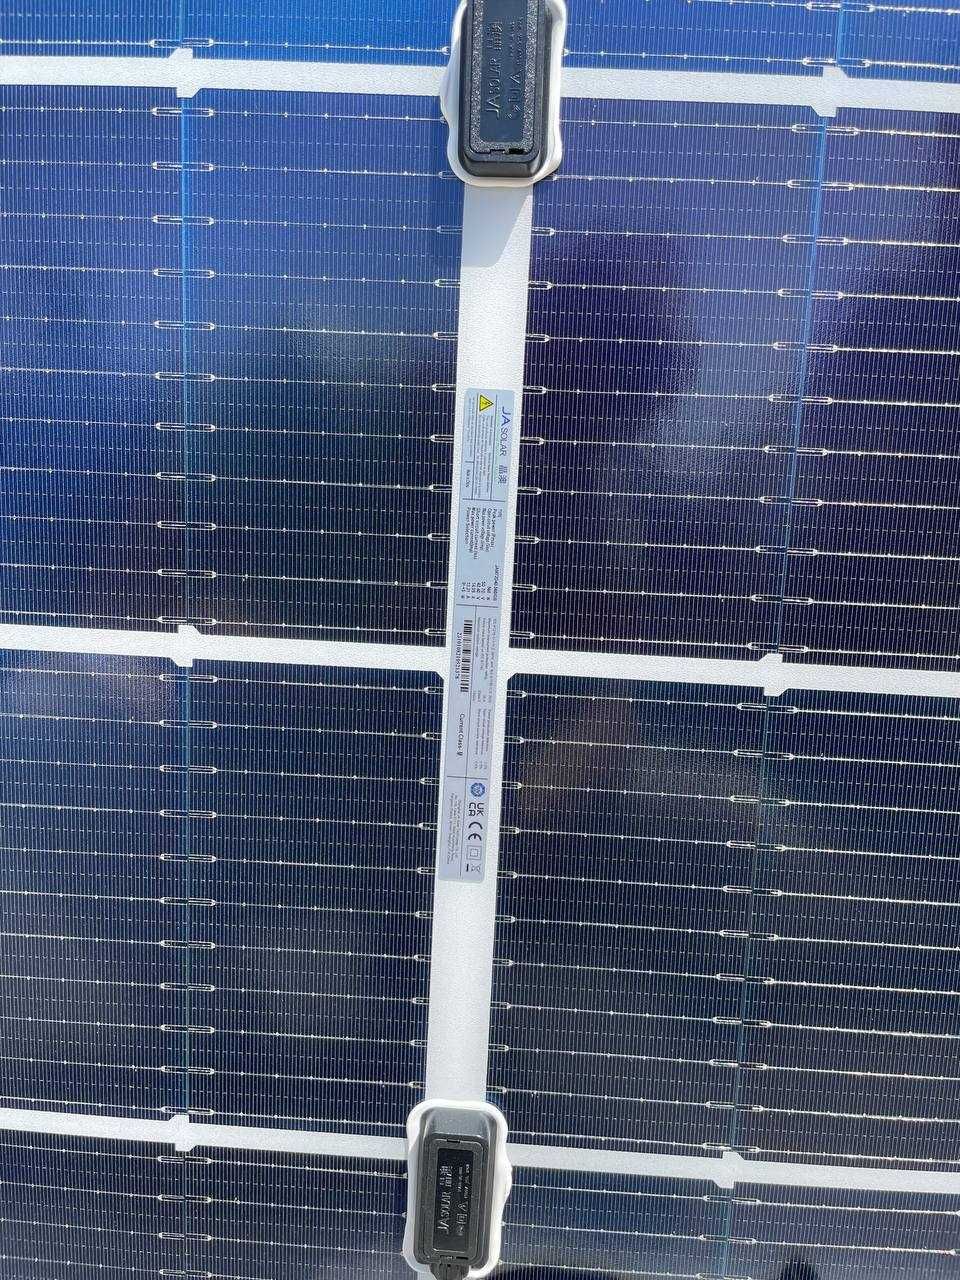 В наличии Солнечные панели JA Solar 550 Вт. Гарантия 15 лет